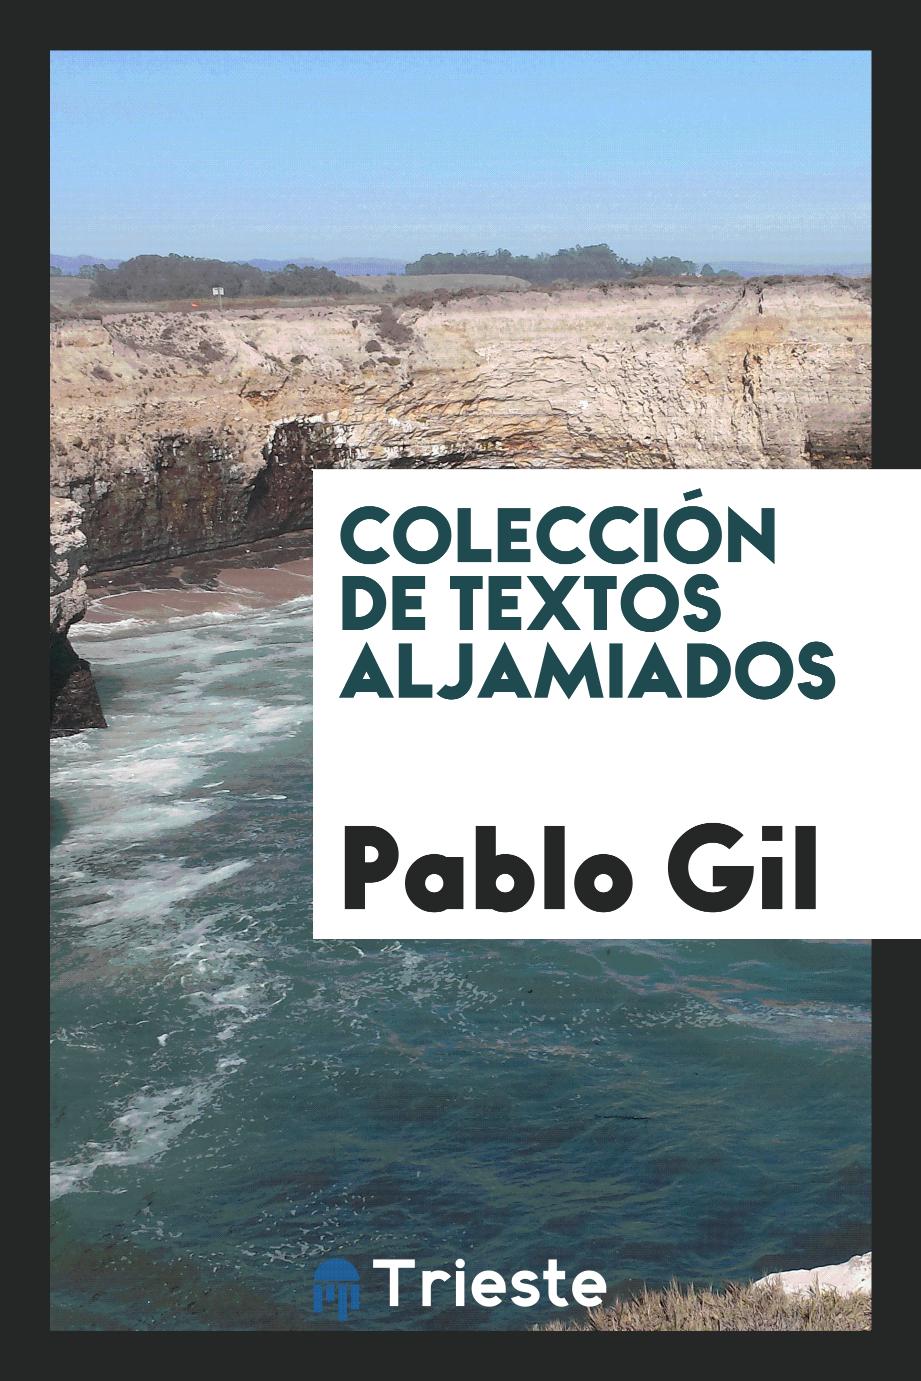 Pablo Gil - Colección de textos aljamiados